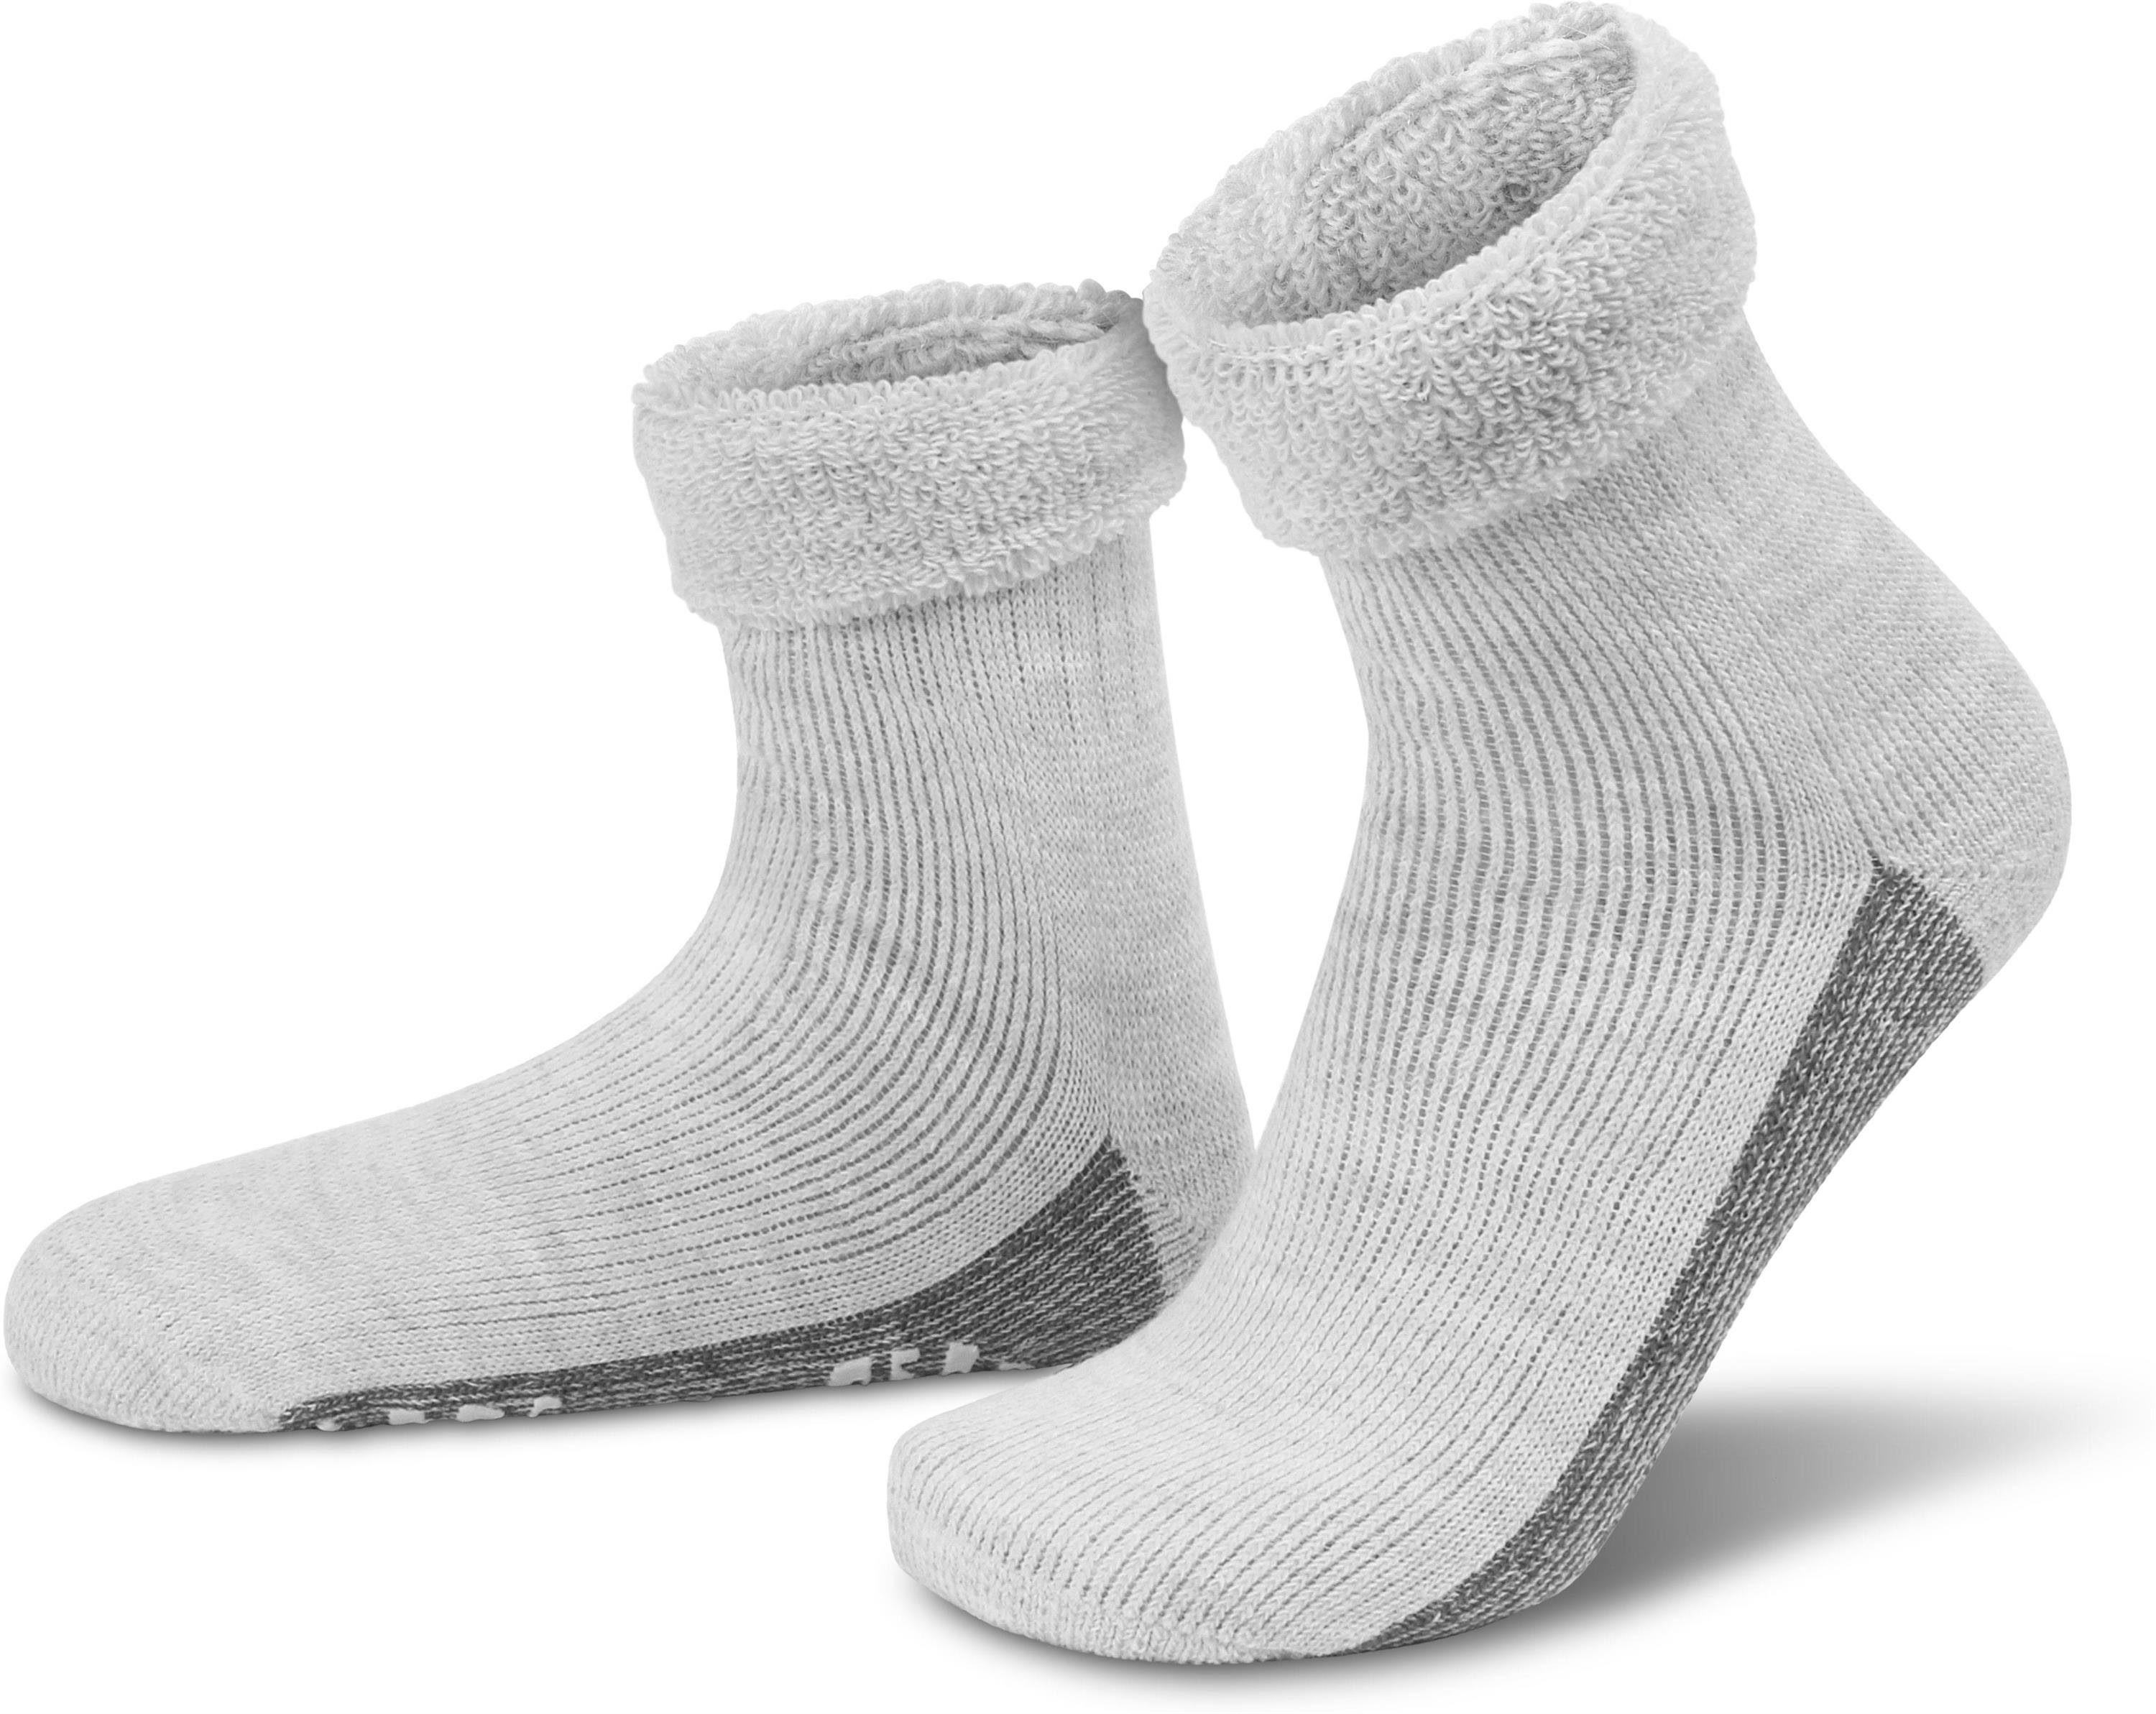 normani ABS-Socken Alpaka-Wollsocken mit ABS-Druck (1 Paar) hochwertige Alpaka-Wolle Hellgrau